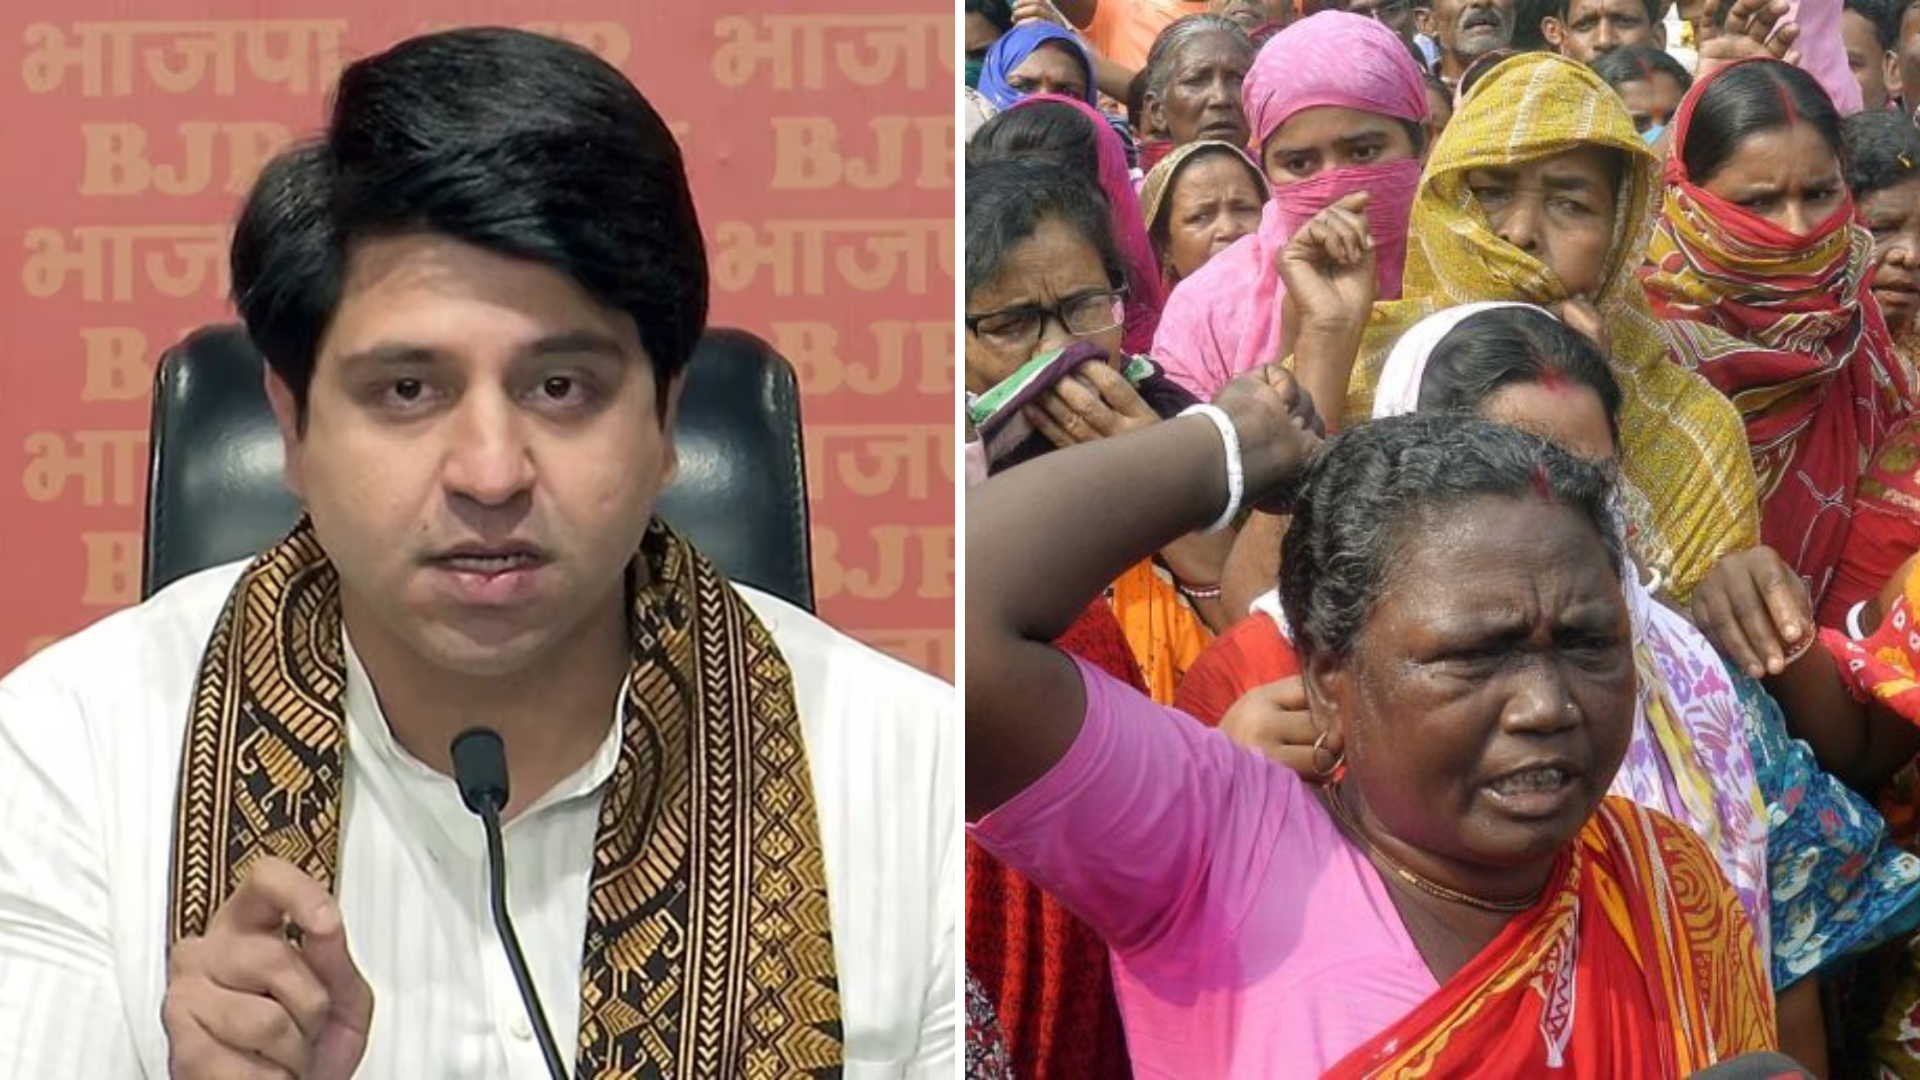 “No woman safe in Bengal”: BJP’s Poonawalla On Malda Rape Incident